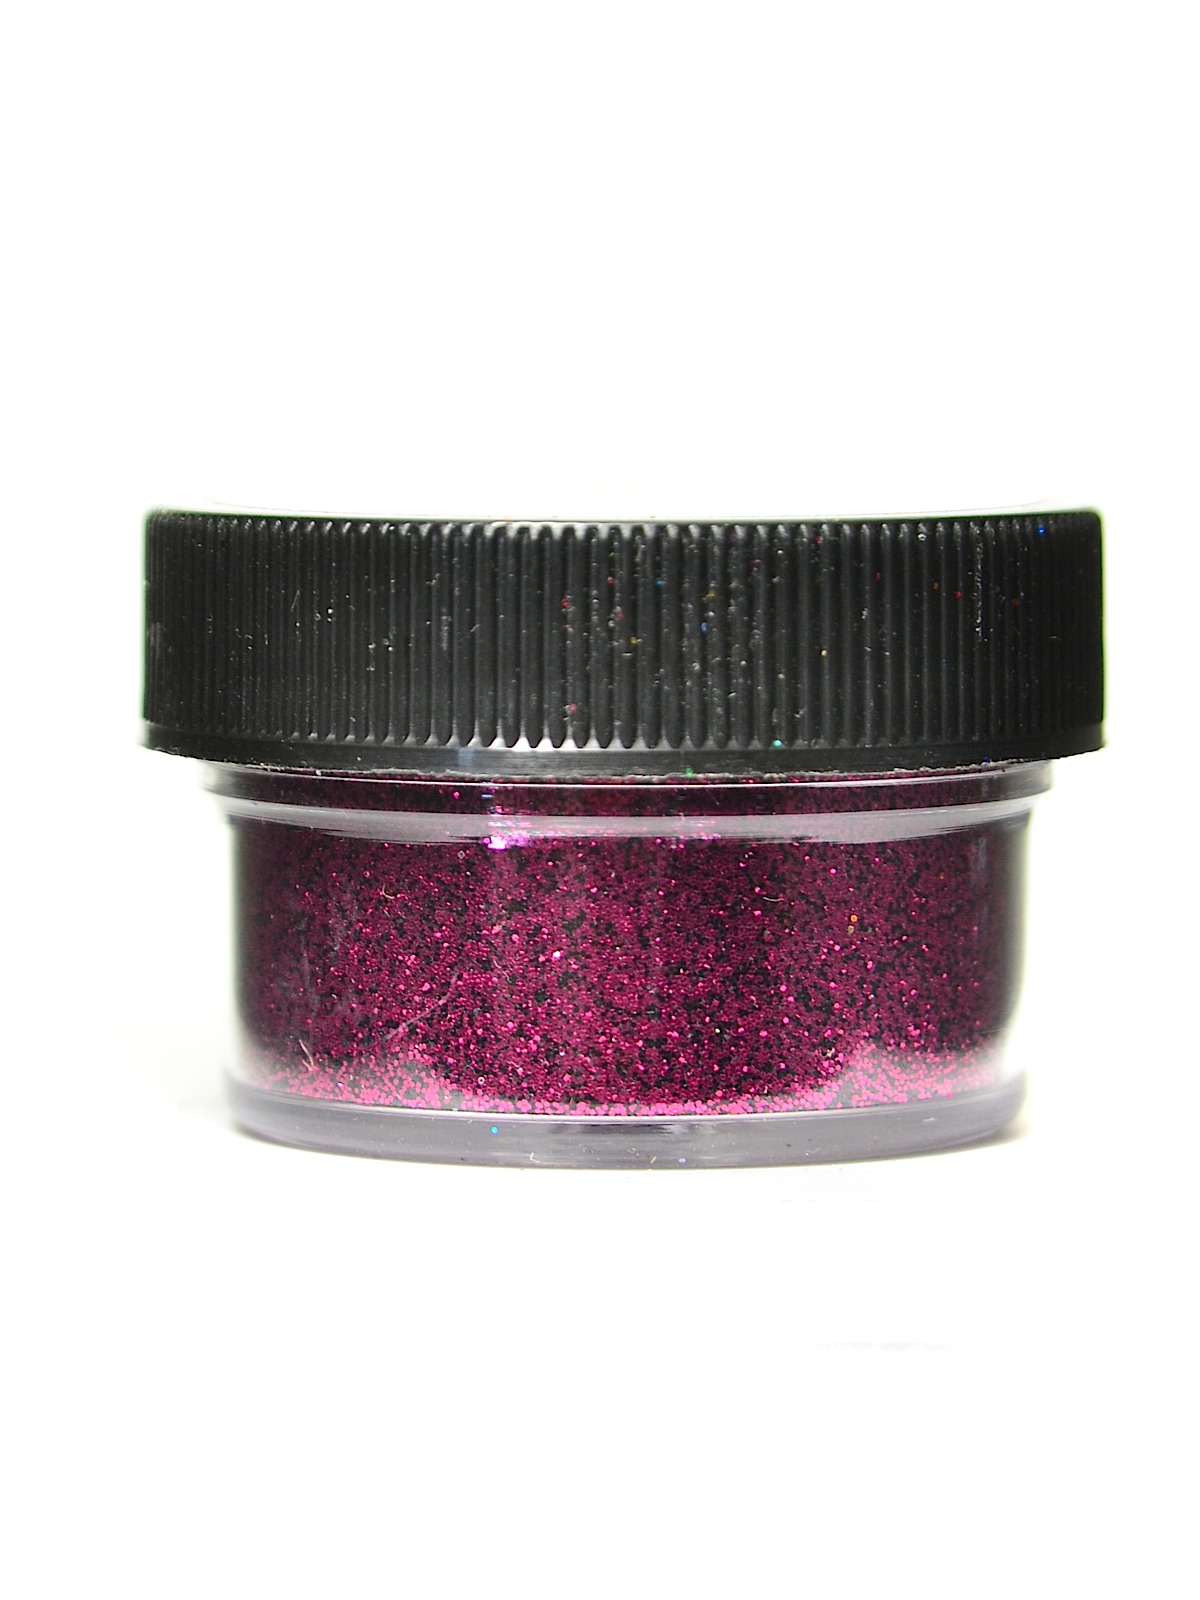 Ultrafine Opaque Glitter Dubonnet 1 2 Oz. Jar